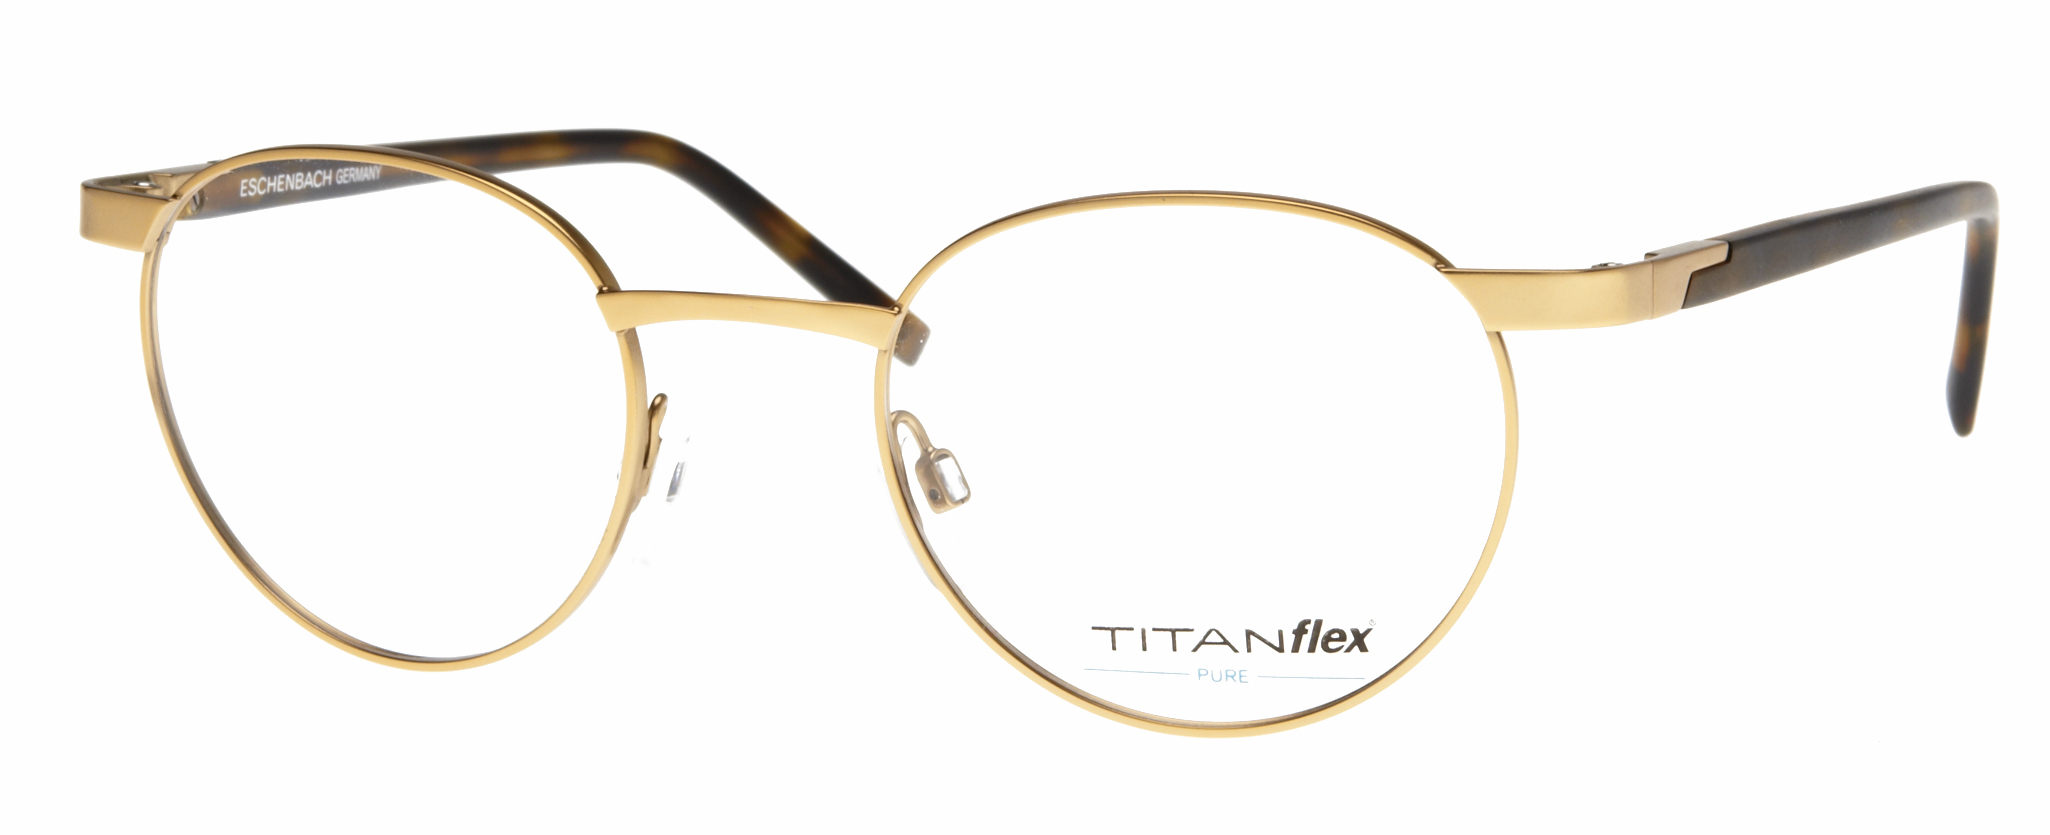 Titanflex 820700